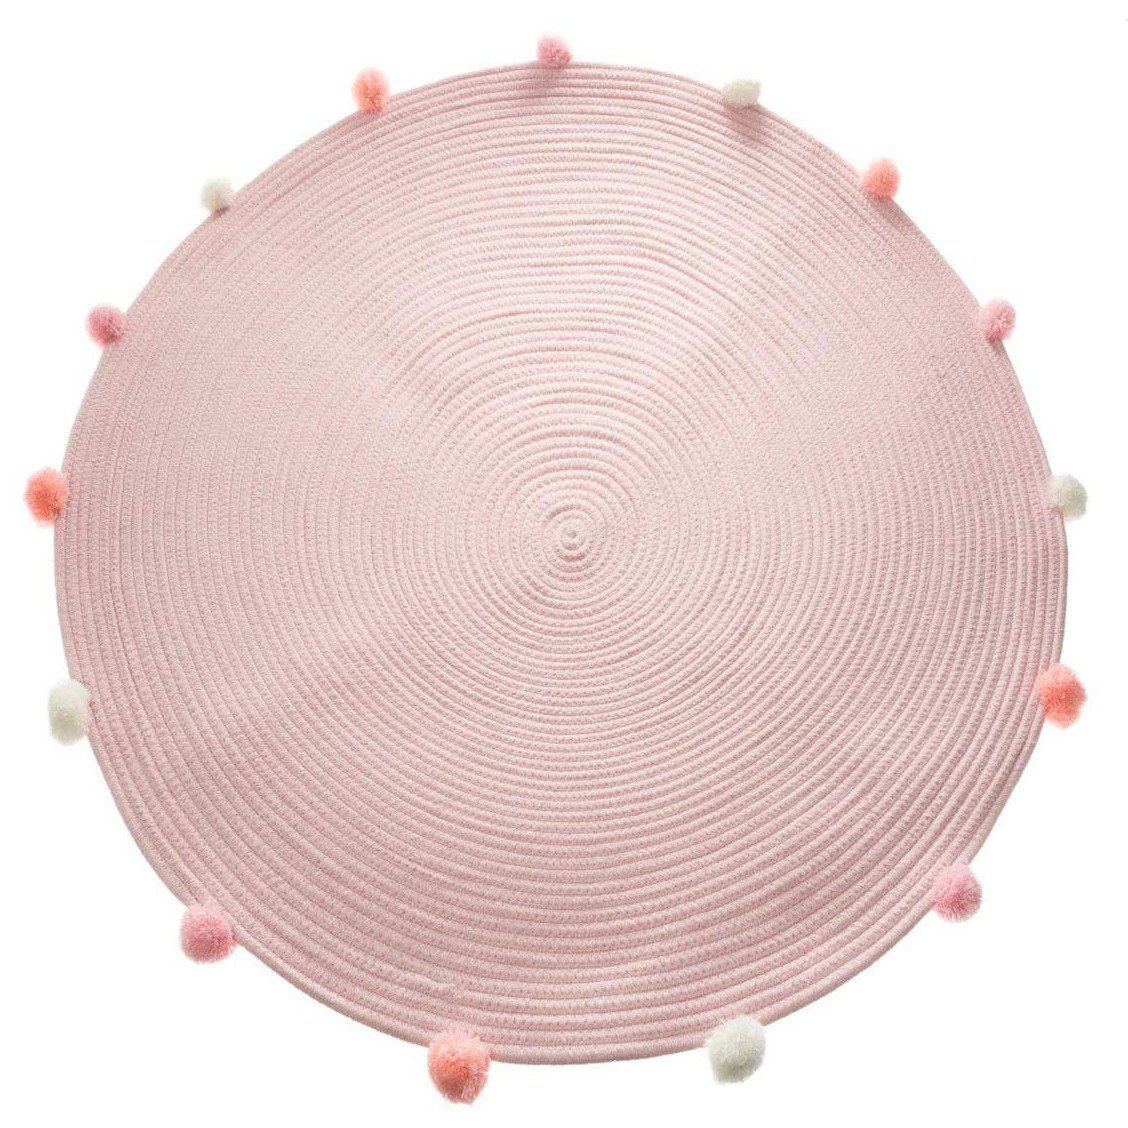 Atmosphera for kids Růžový koberec pro dětský pokoj s dekorativními pompony, průměr 90 cm - EDAXO.CZ s.r.o.